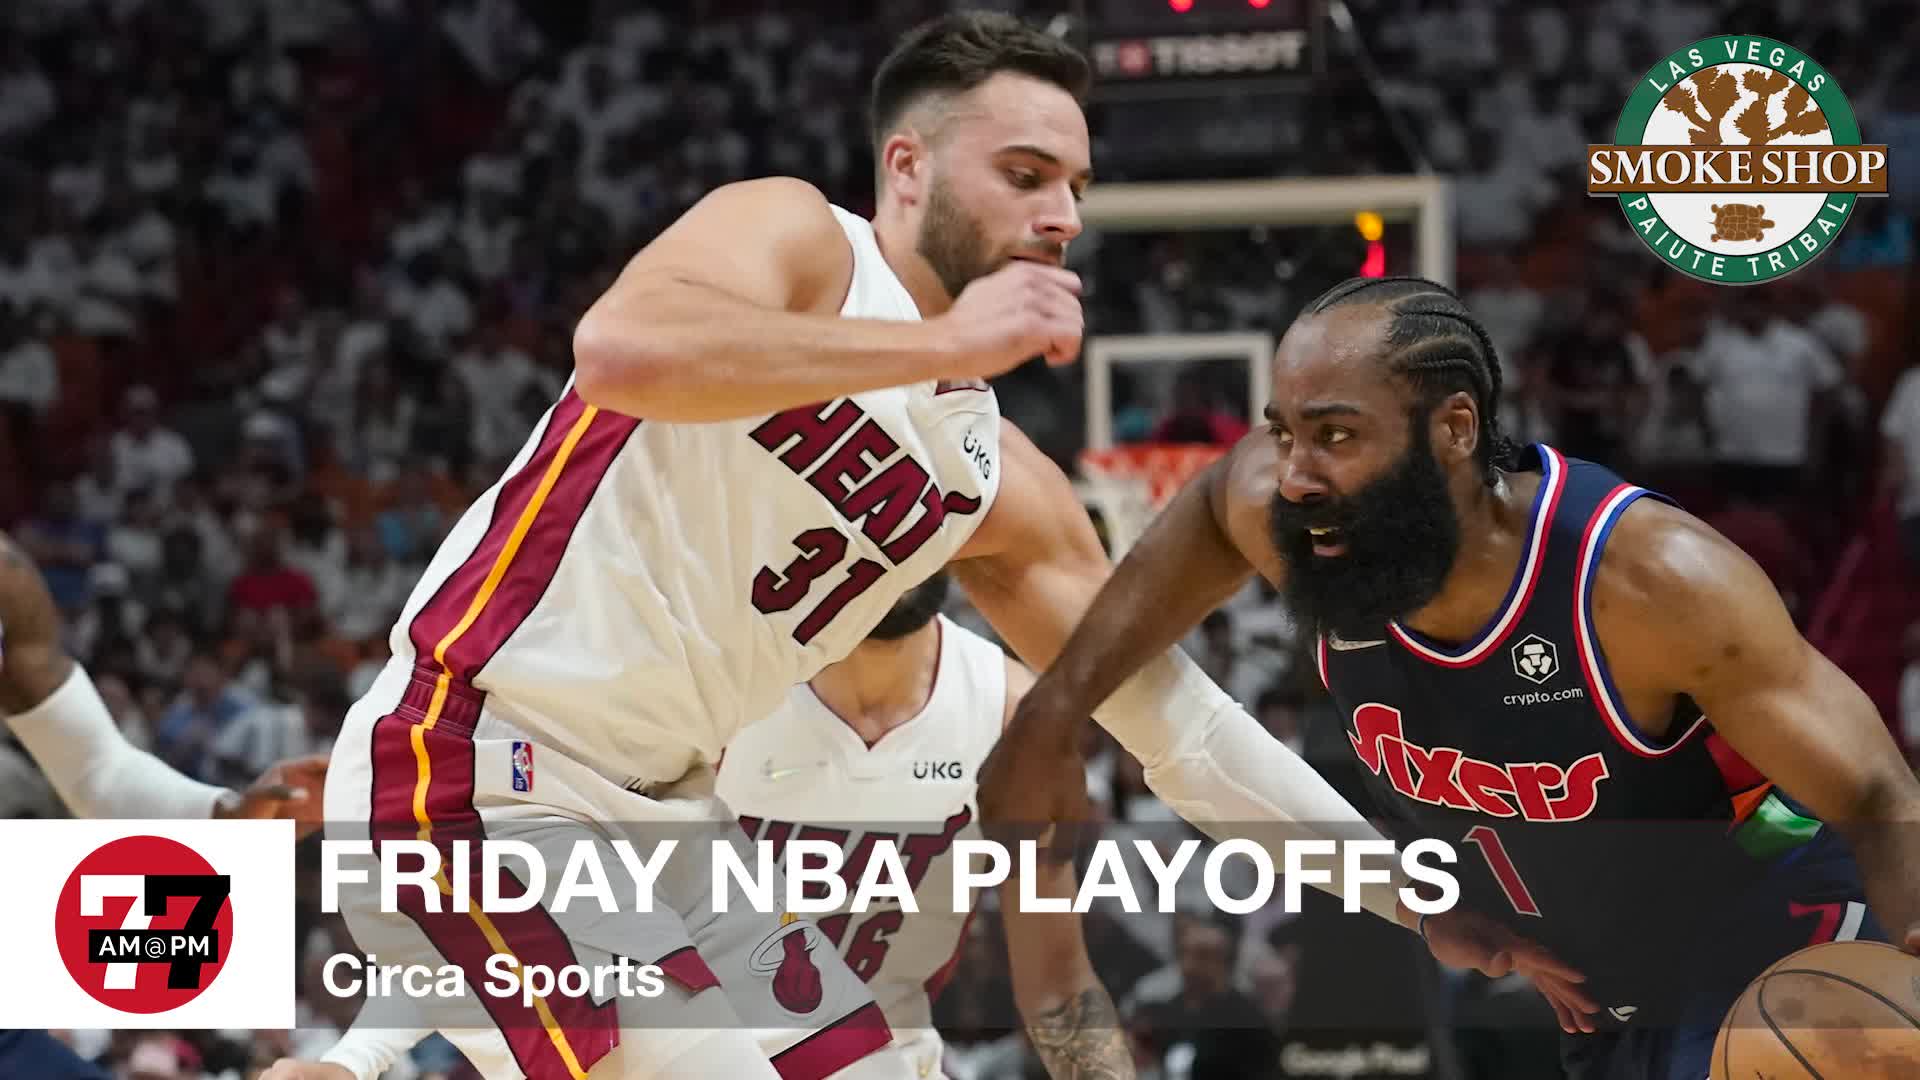 Friday NBA Playoffs